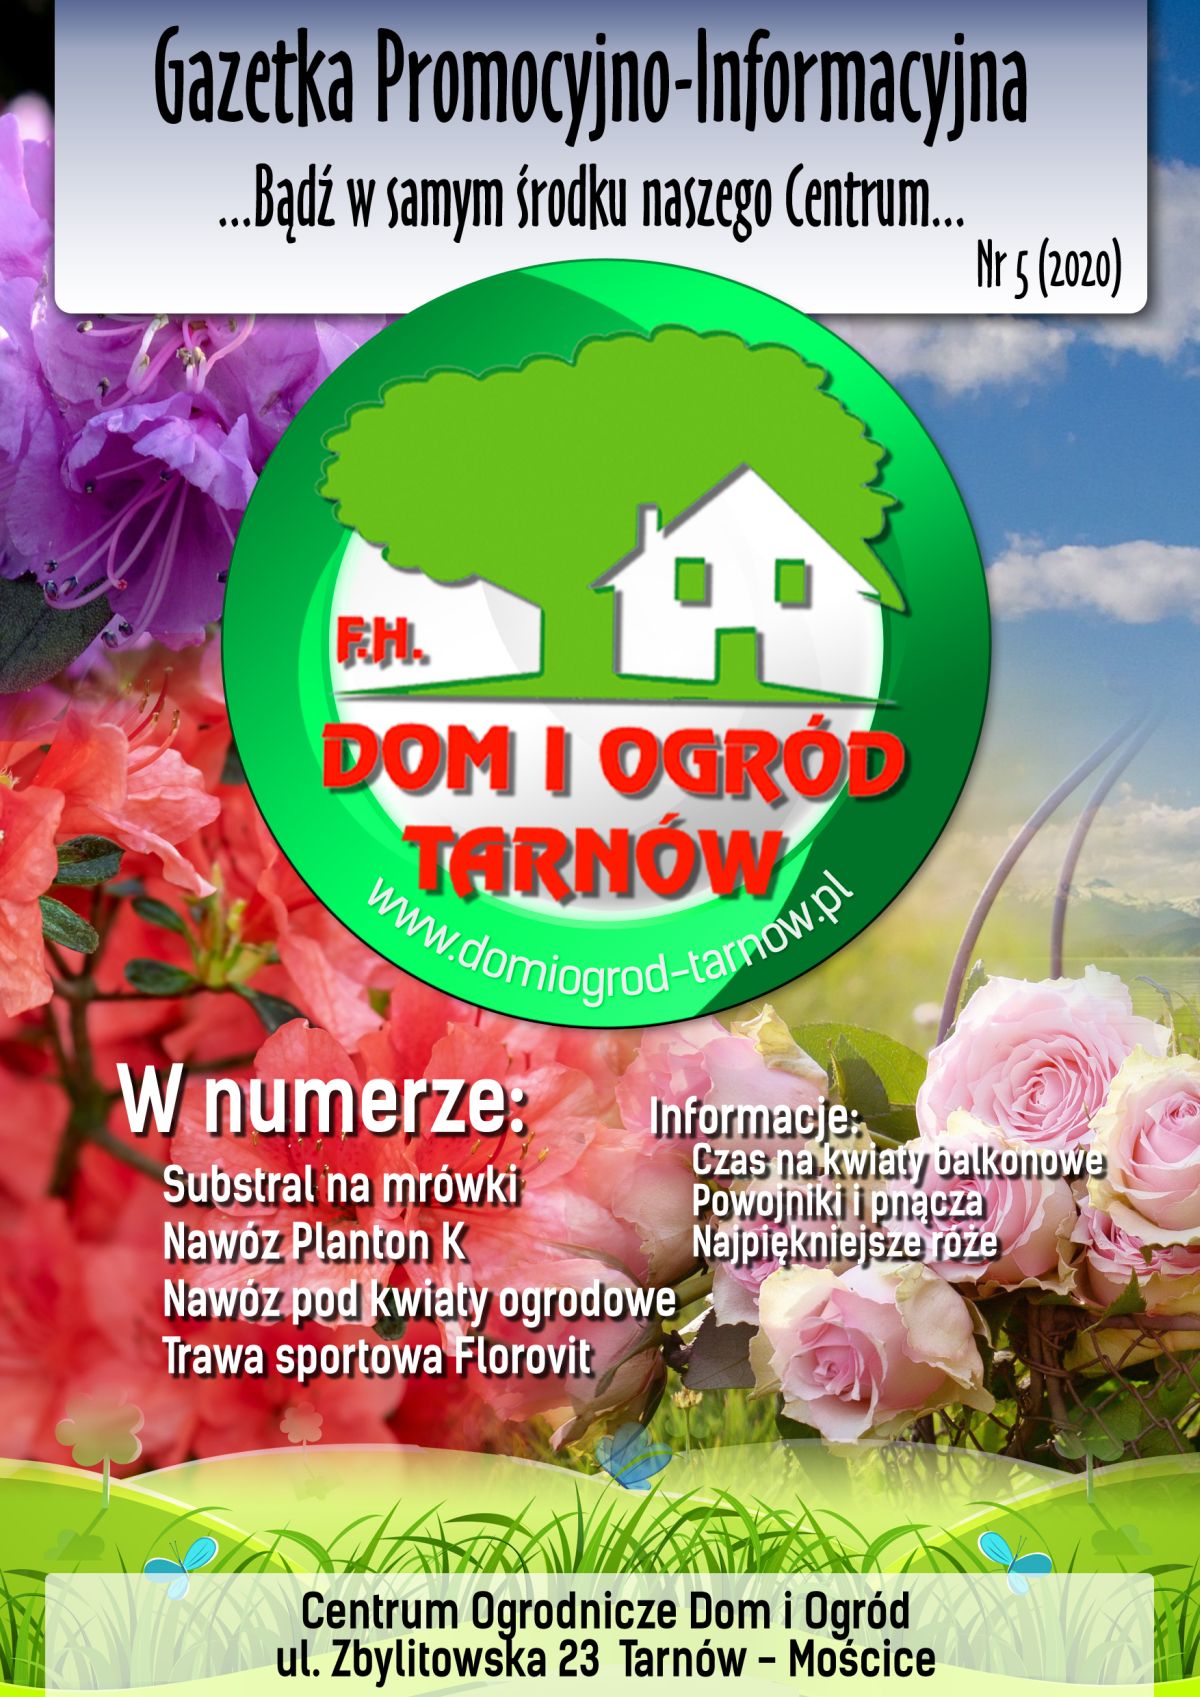 Gazetka Promocyjno-Informacyjna - 05/2020